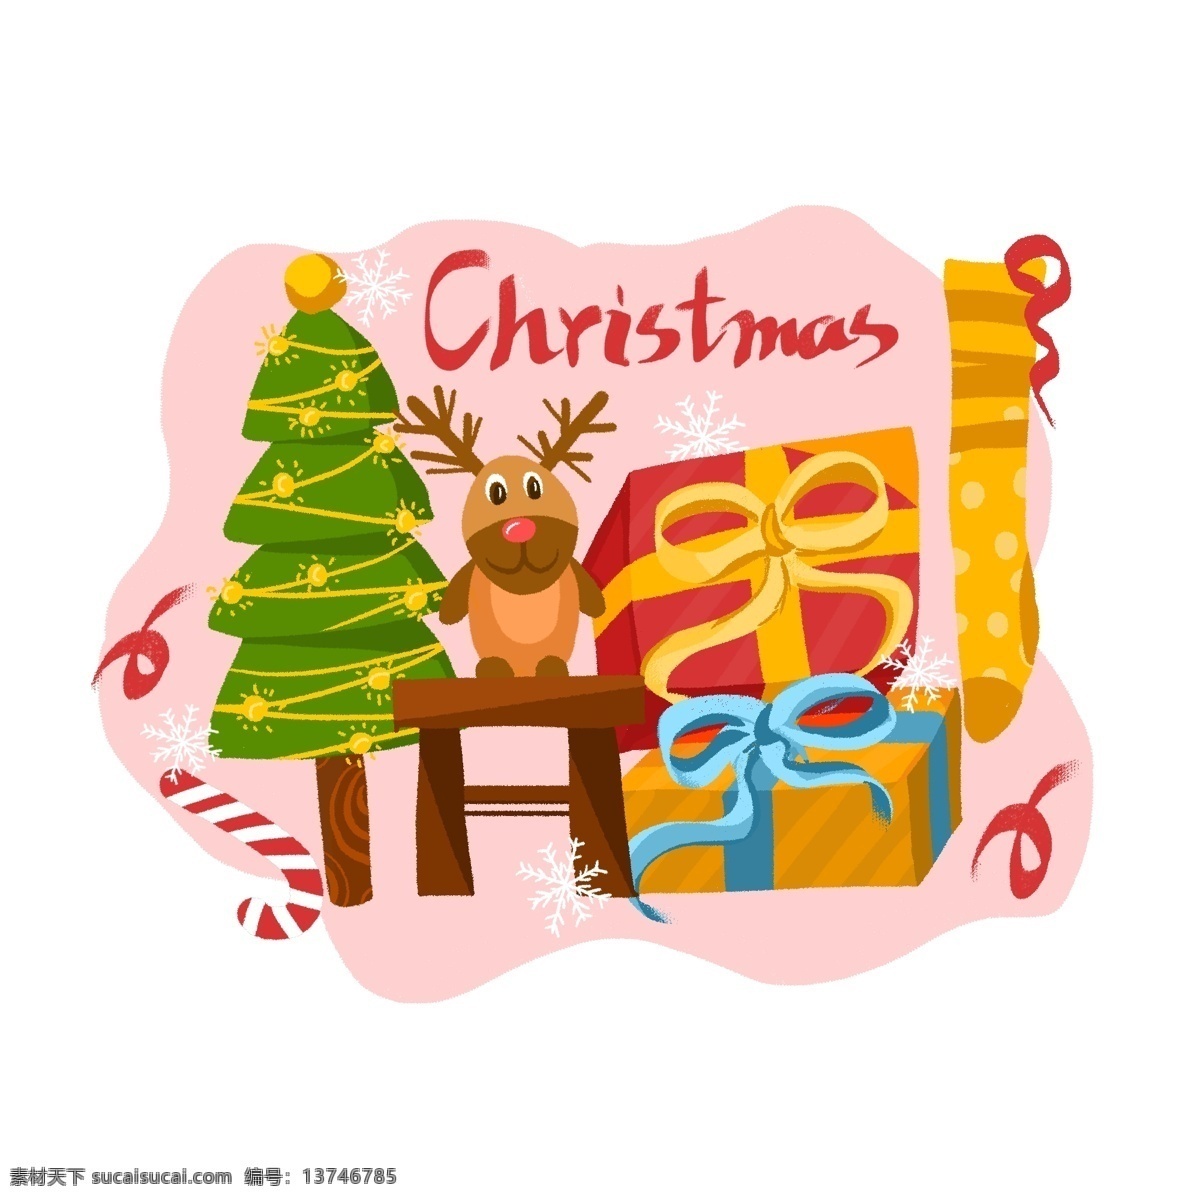 原创 手绘 可爱 风 麋鹿 圣诞树 圣诞节 礼物 盒 袜子 手绘风 可爱风 圣诞礼物盒 插画元素